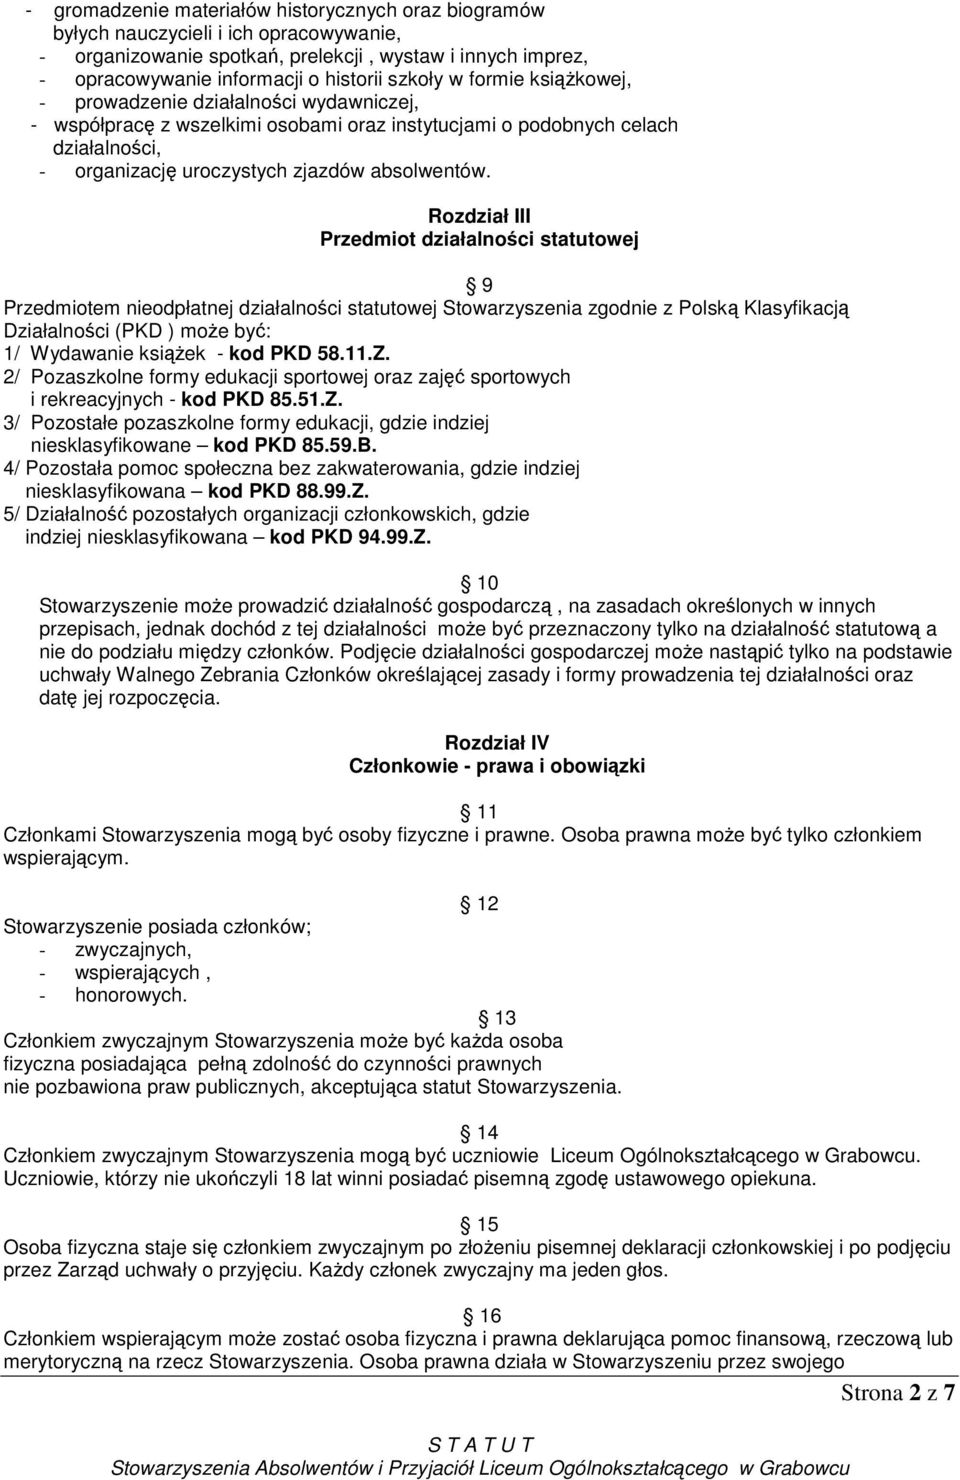 Rozdział III Przedmiot działalności statutowej 9 Przedmiotem nieodpłatnej działalności statutowej Stowarzyszenia zgodnie z Polską Klasyfikacją Działalności (PKD ) moŝe być: 1/ Wydawanie ksiąŝek - kod